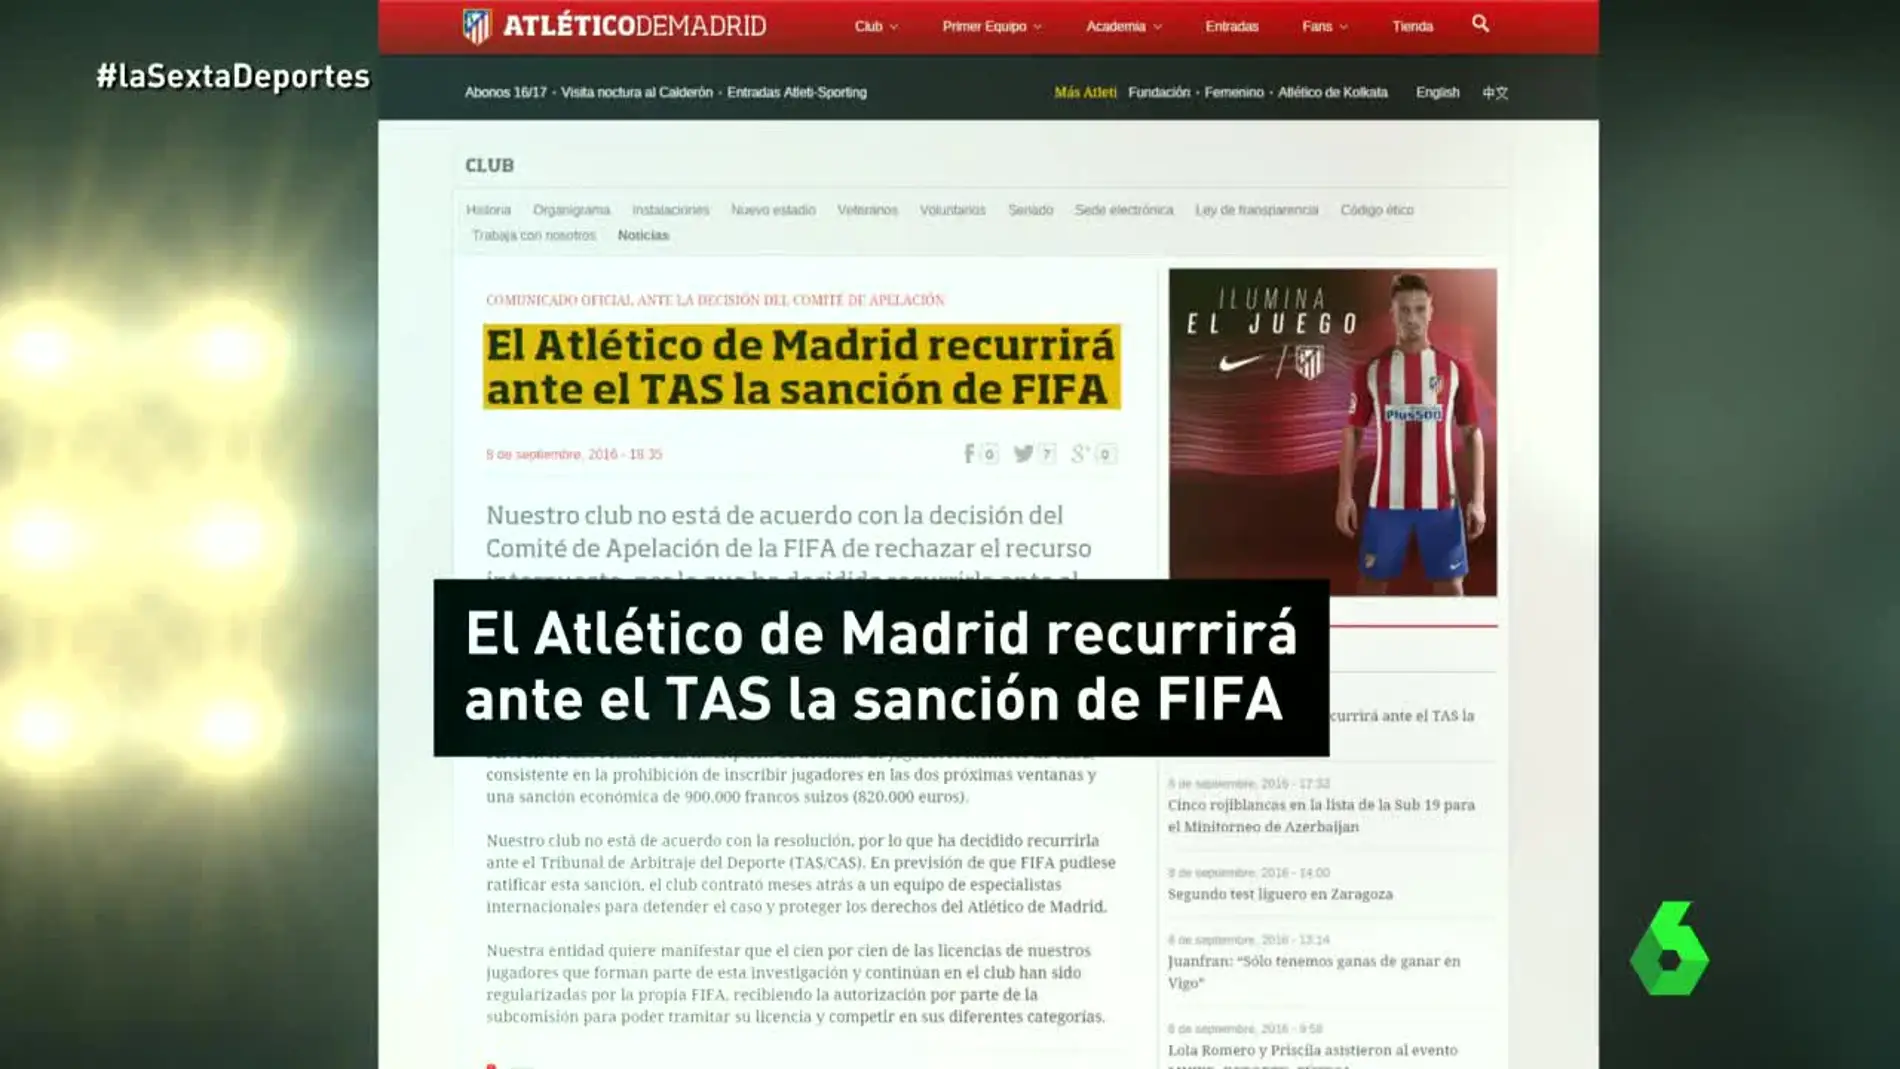 El comunicado del Atlético informando que recurrirán al TAS la sanción de la FIFA.